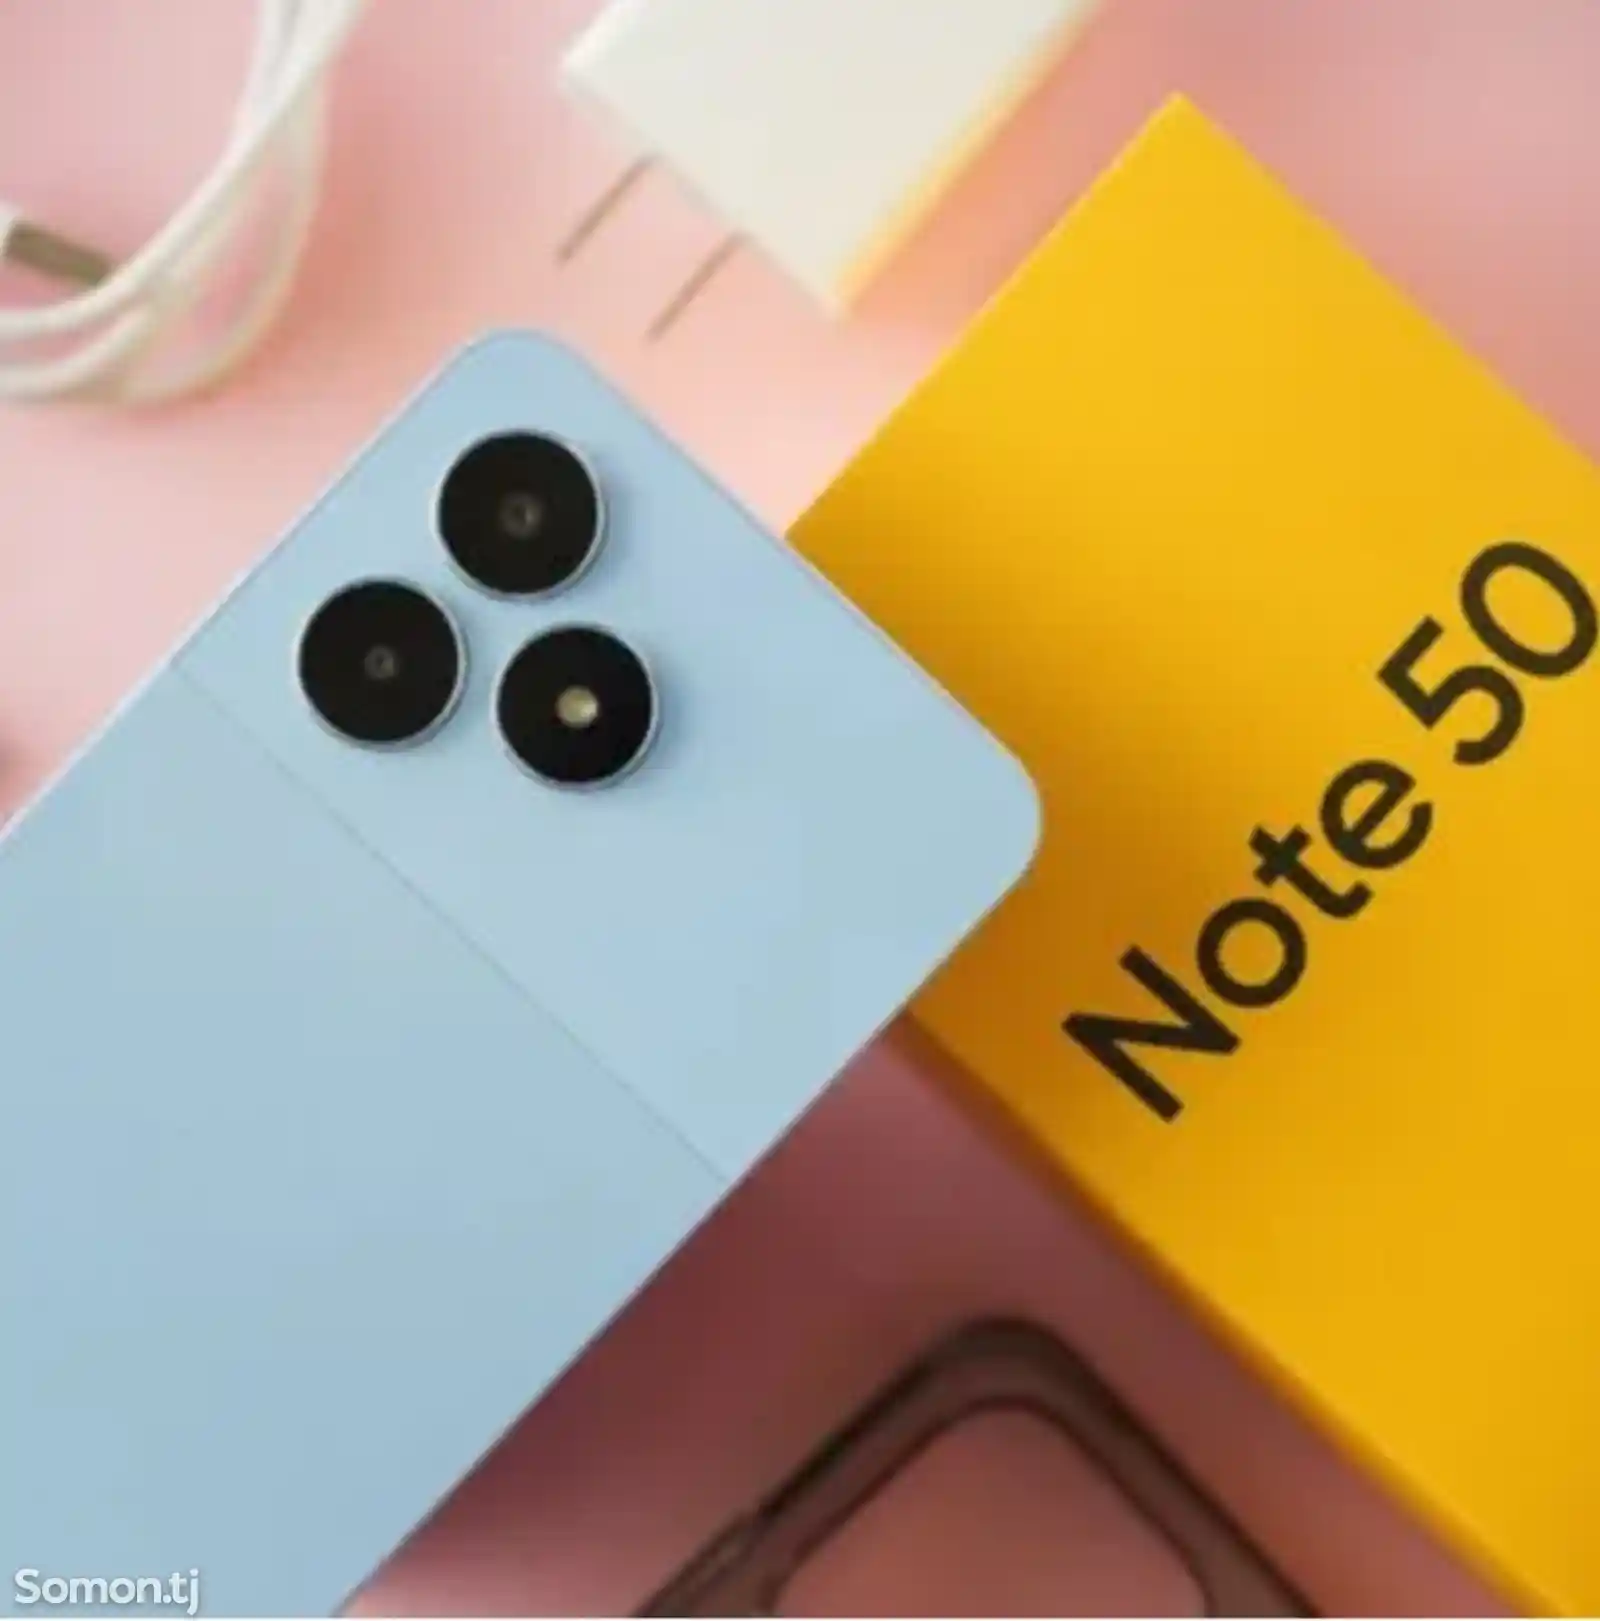 Realme Note 50 128Gb blue-3